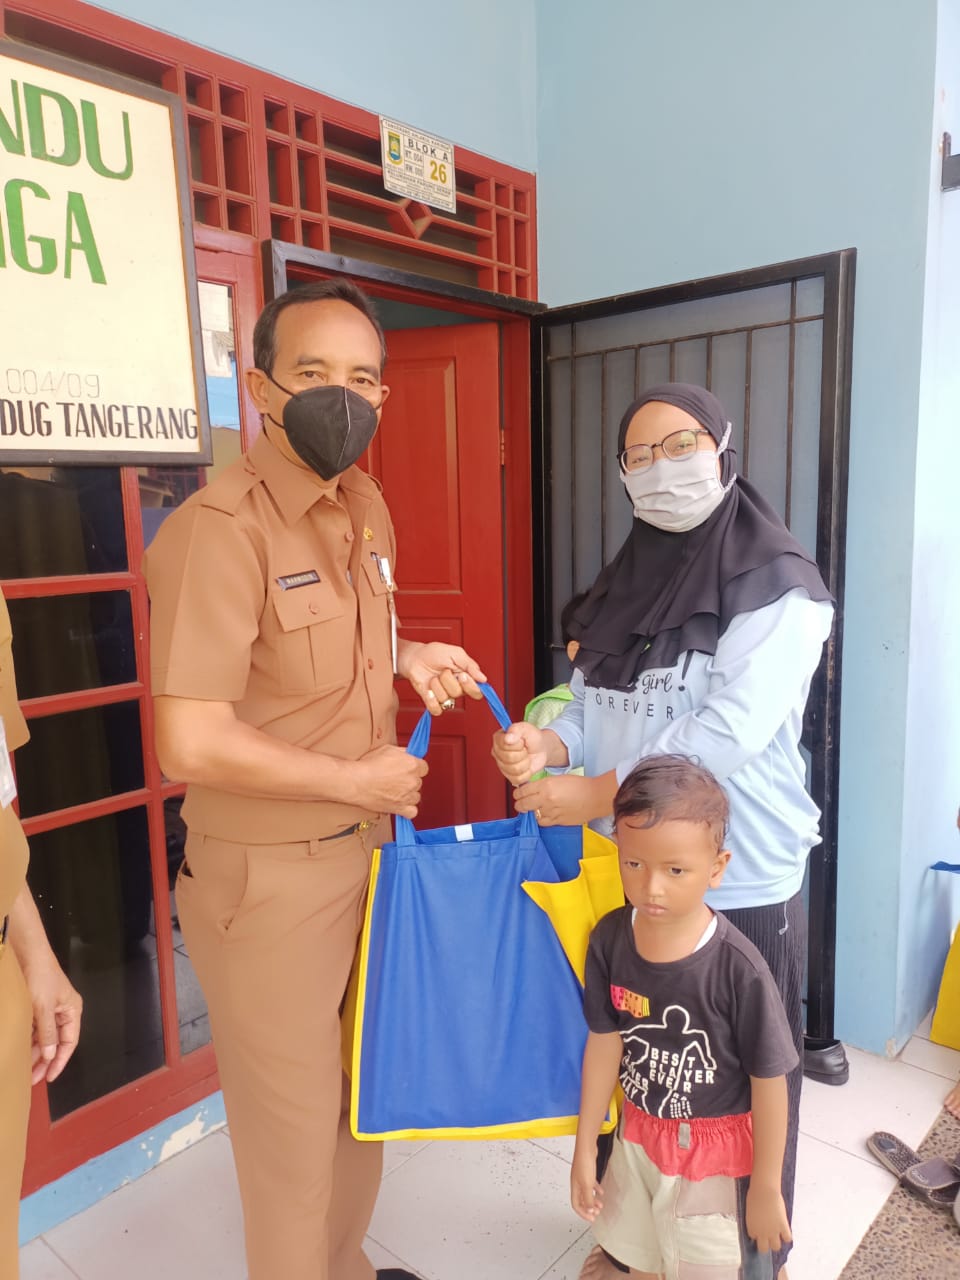 Pendistribusian Bantuan Permakanan oleh DKP Kota Tangerang kepada 20 orang balita di Posyandu Kenanga Kelurahan Parung Serab